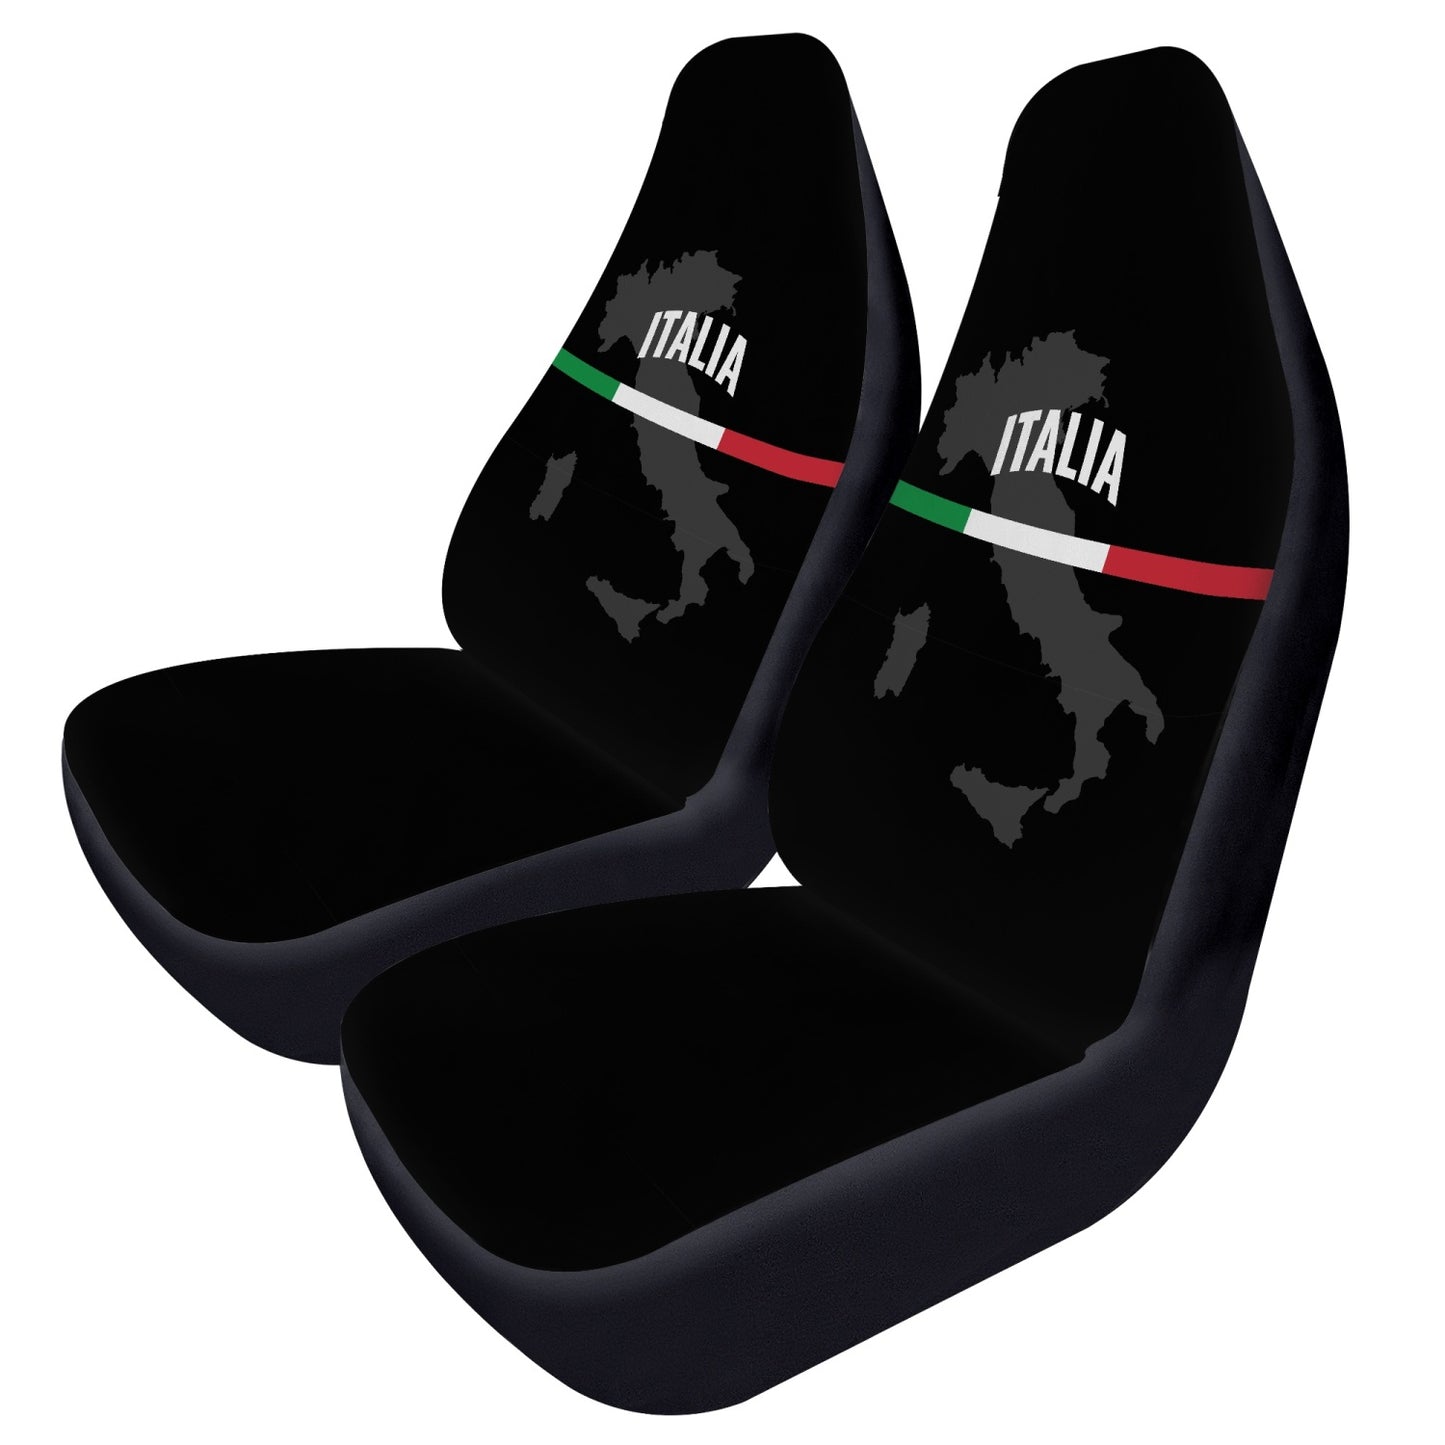 Italia black Car Seats Cover 2Pcs